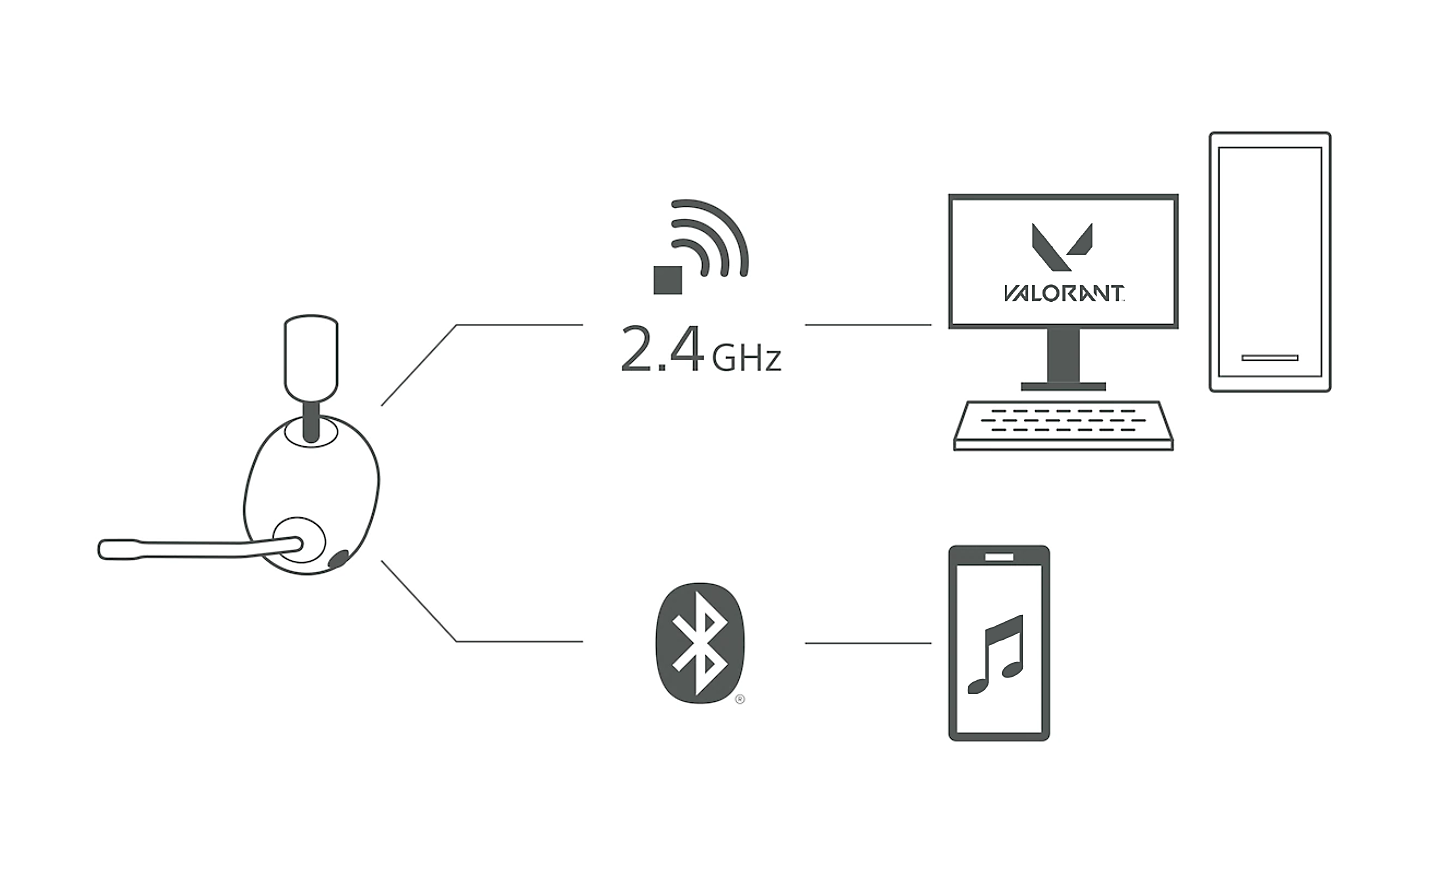 Kablosuz 2,4 GHz sembolü üzerinden bir bilgisayara ve Bluetooth® sembolü üzerinden bir cep telefonuna giden çizgilerle H9 kulaklığın görüntüsü